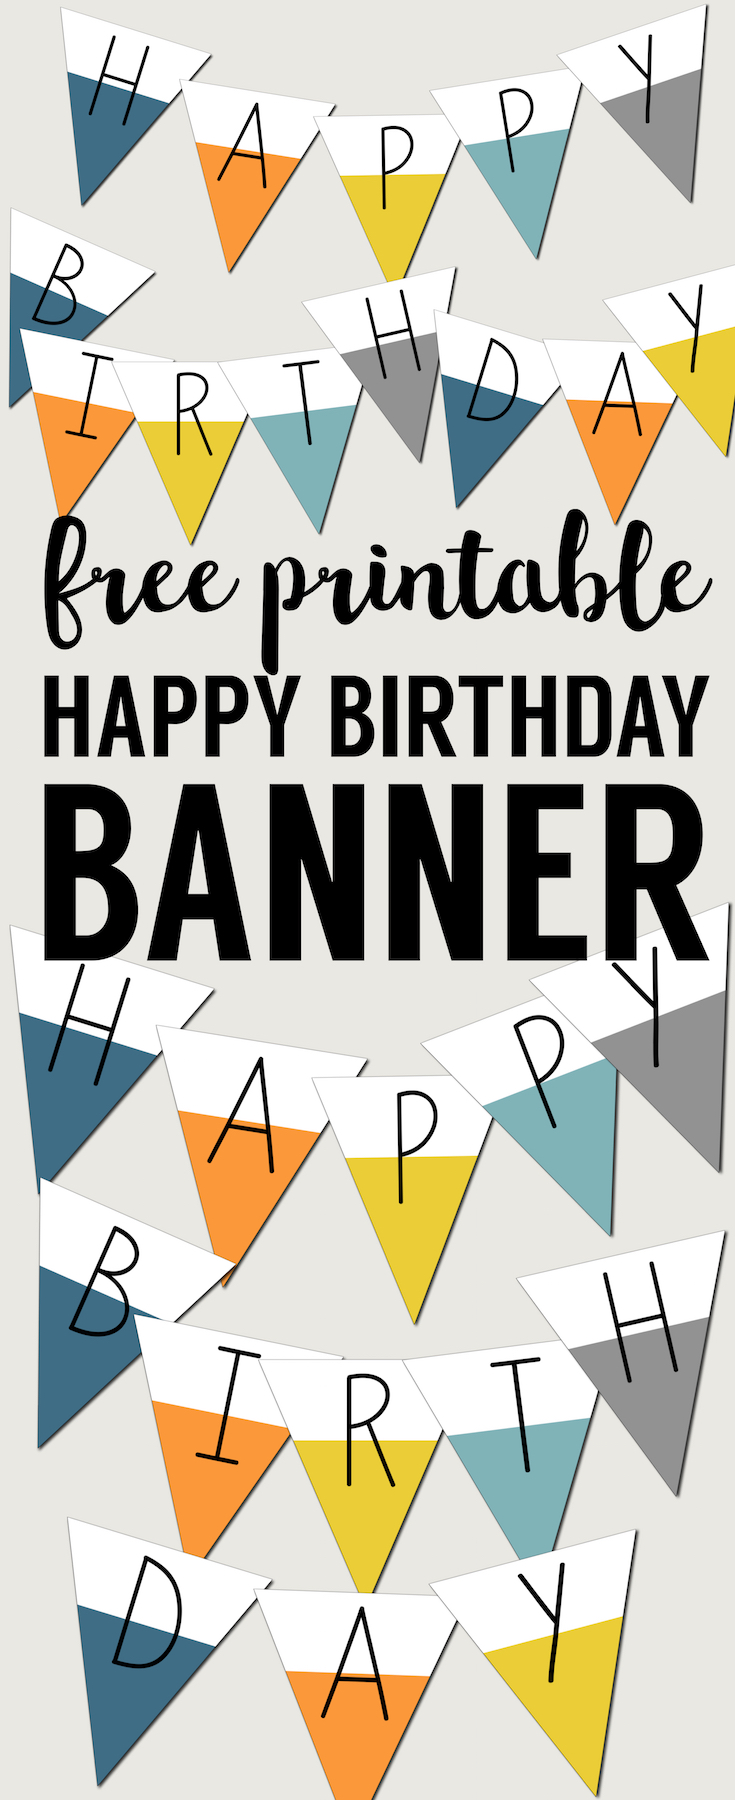 Free Printable Birthday Banners - Printable World Holiday